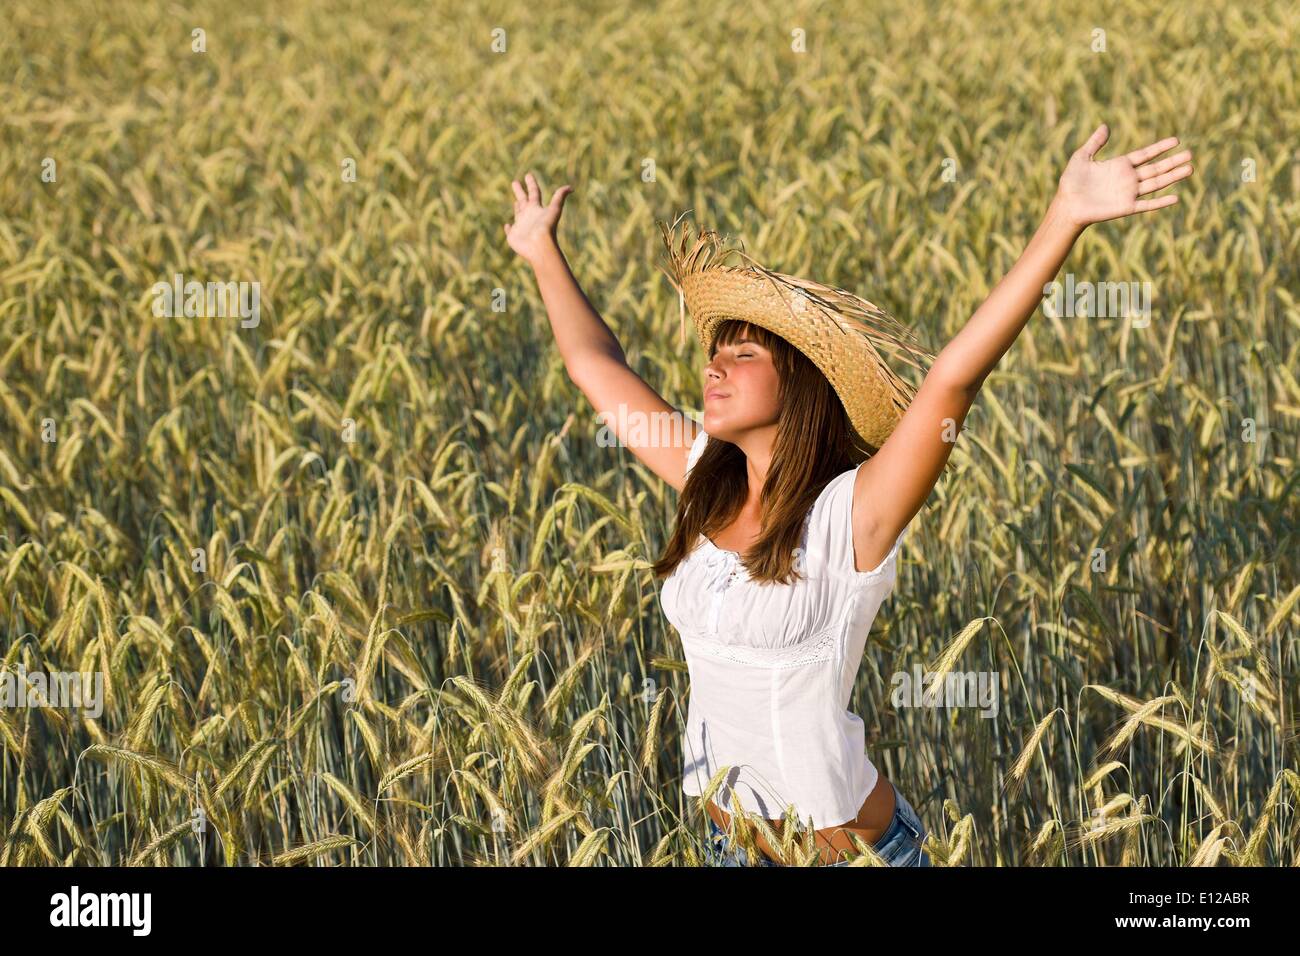 Lug. 12, 2010 - Luglio 12, 2010 - Happy donna con cappello di paglia godersi il sole nel campo di mais Ã Â© CTK/ZUMAPR) Foto Stock